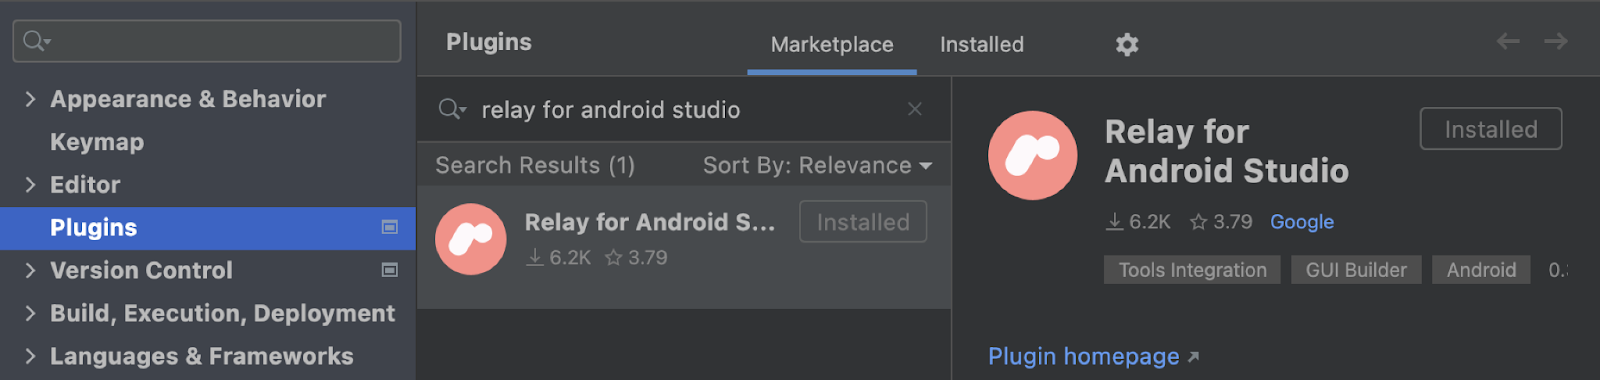 Configurações do plug-in para o Android Studio